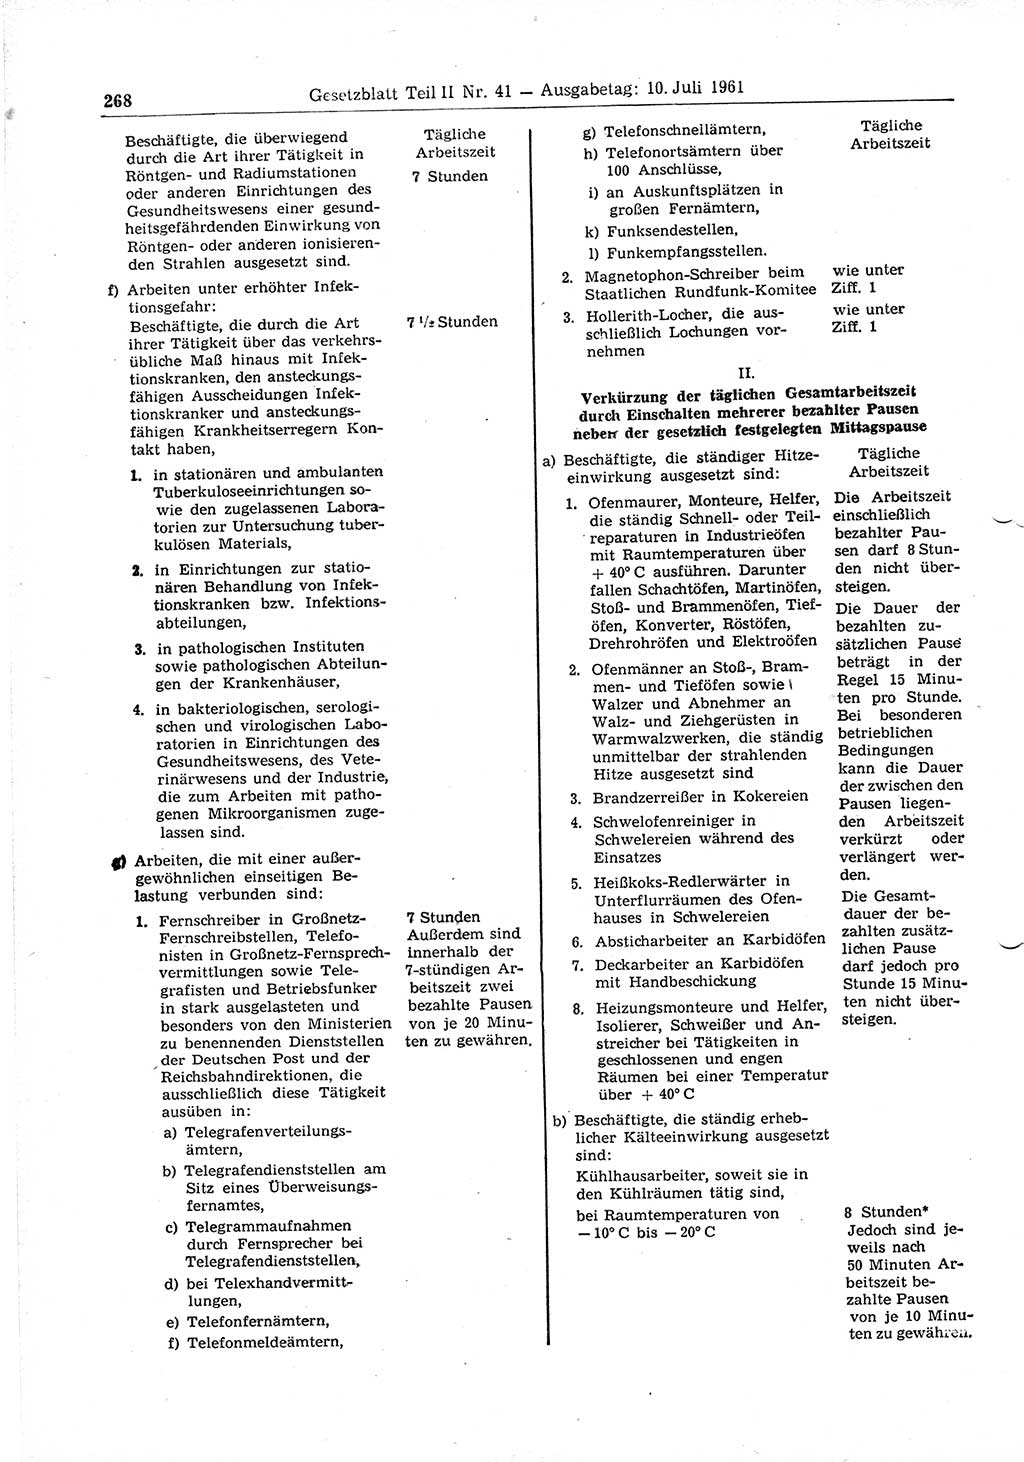 Gesetzblatt (GBl.) der Deutschen Demokratischen Republik (DDR) Teil ⅠⅠ 1961, Seite 268 (GBl. DDR ⅠⅠ 1961, S. 268)